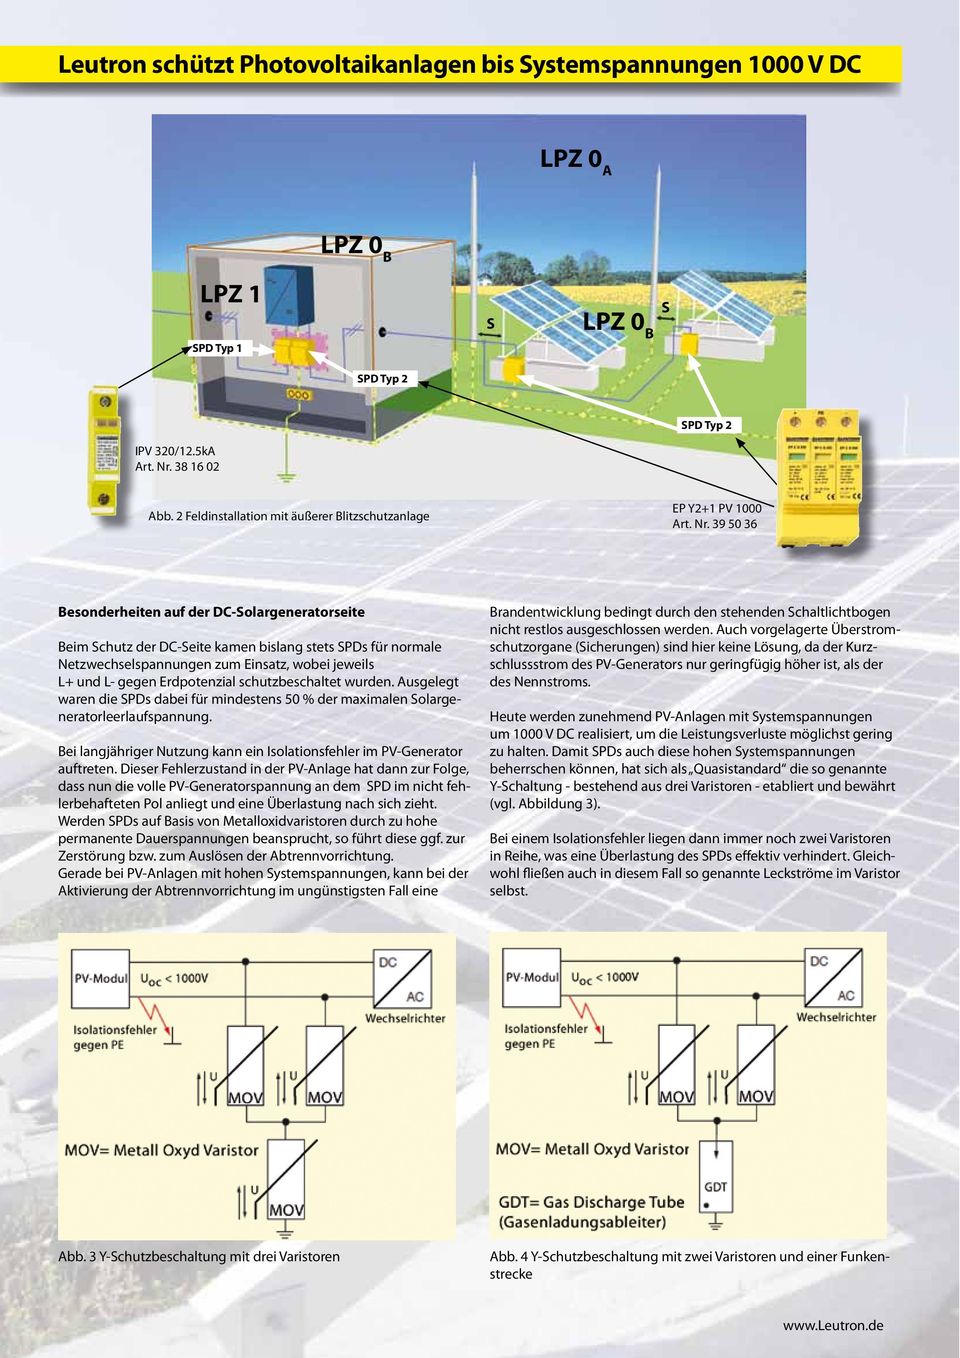 39 50 36 Besonderheiten auf der DC-Solargeneratorseite Beim Schutz der DC-Seite kamen bislang stets SPDs für normale Netzwechselspannungen zum Einsatz, wobei jeweils L+ und L- gegen Erdpotenzial